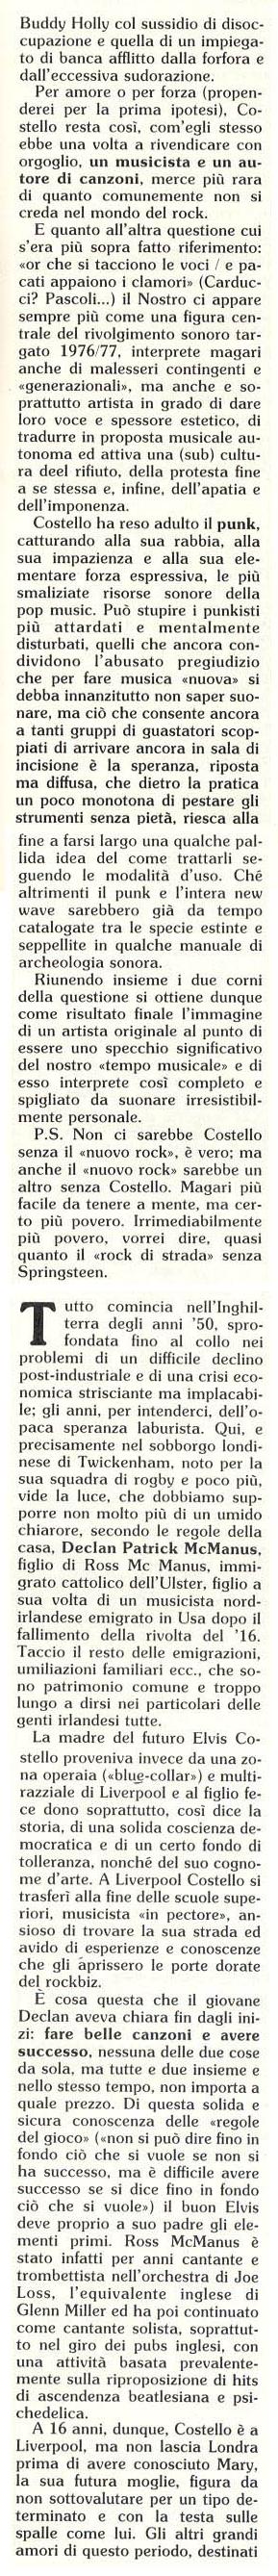 1983-01-00 Il Mucchio Selvaggio page 05 composite.jpg